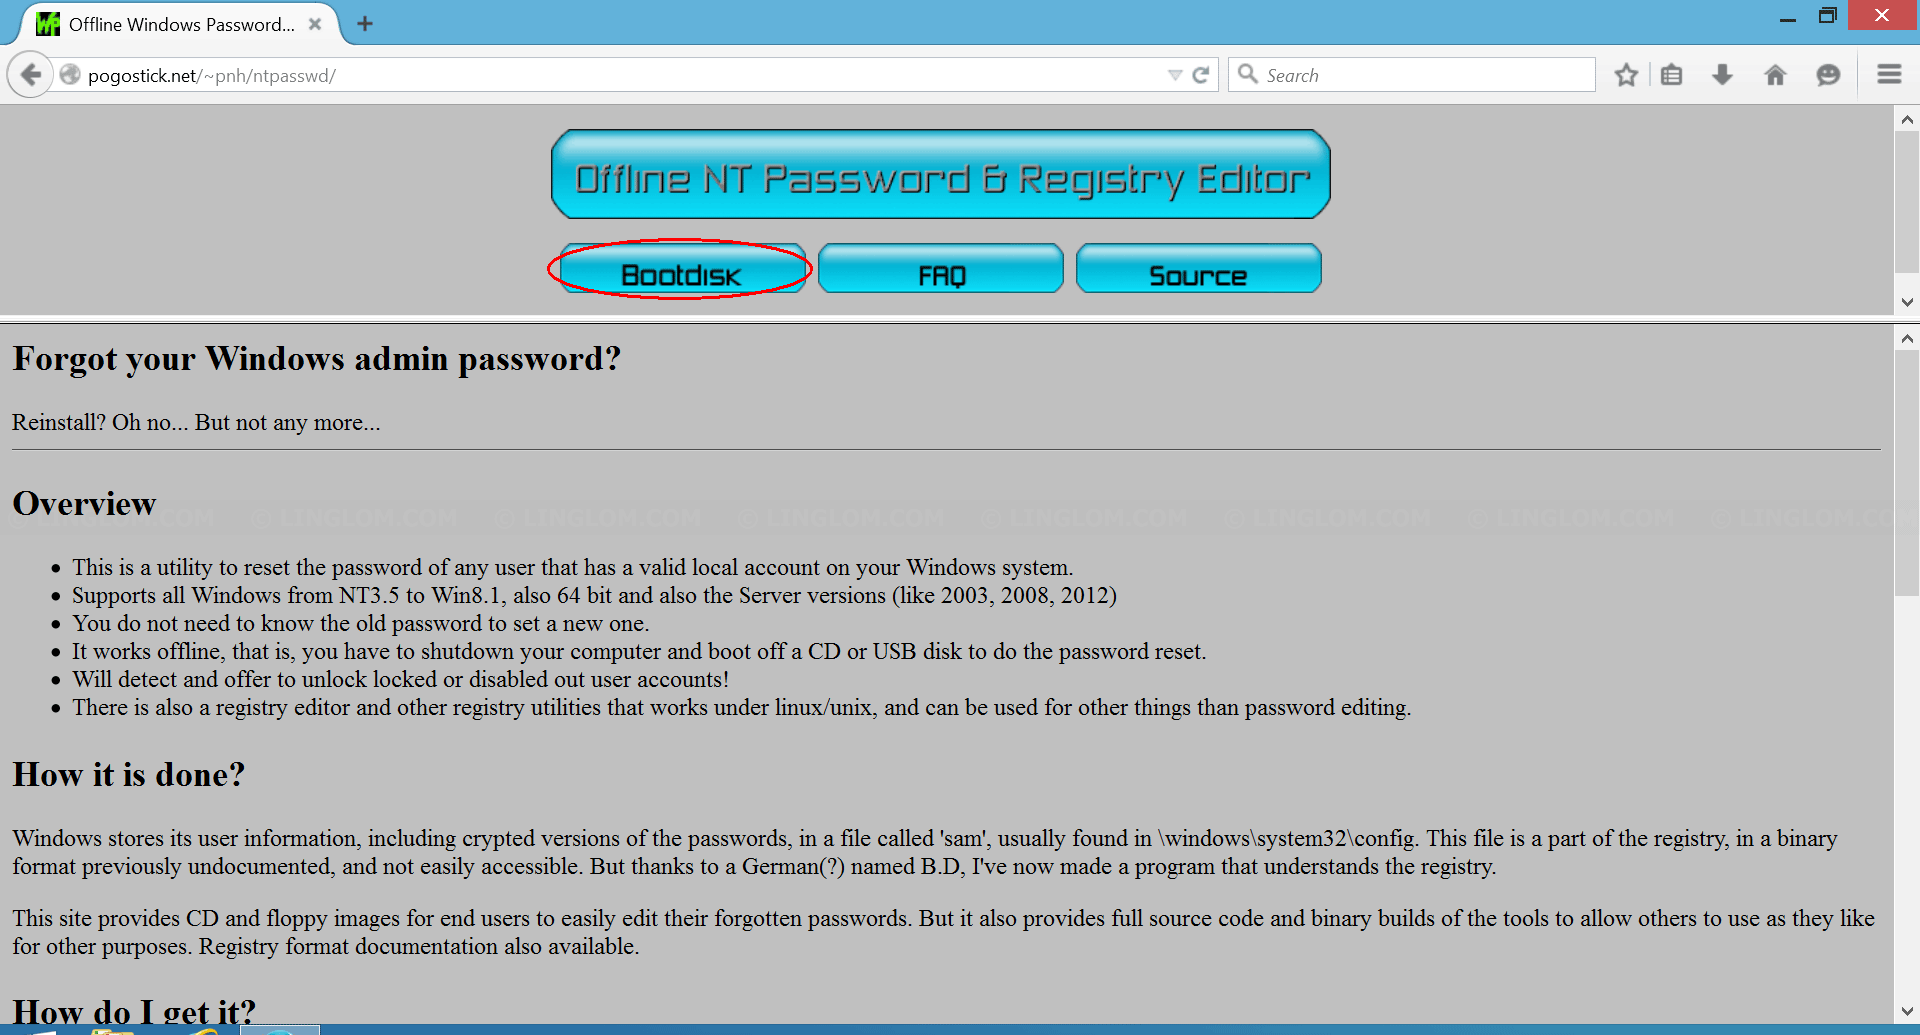 Download Offline NT Password & Registry Editor